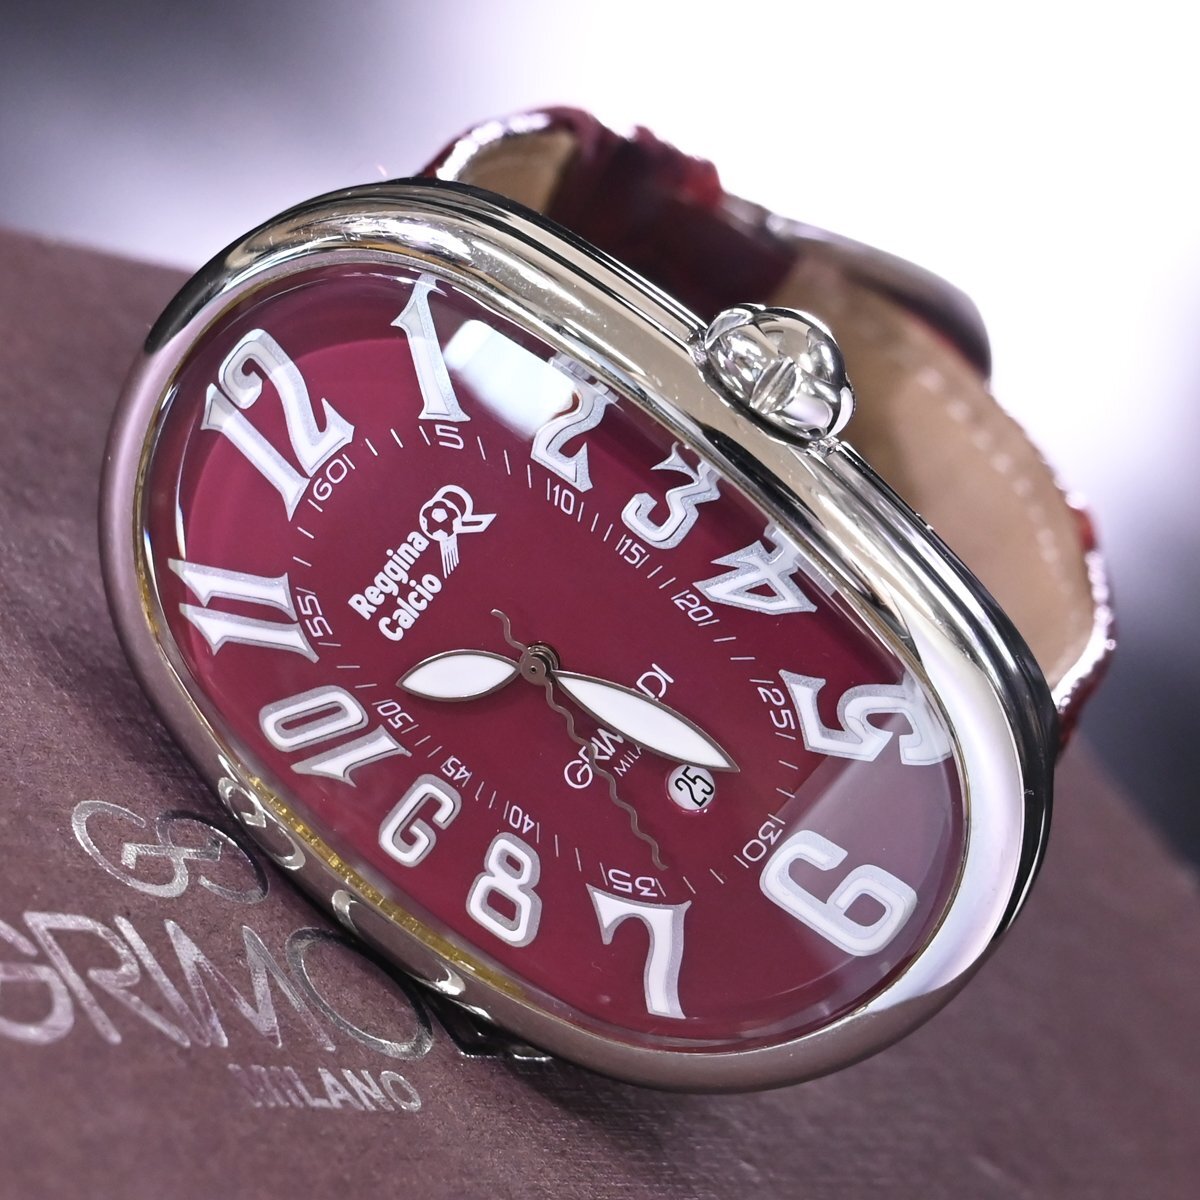 本物 極上品 グリモルディ 世界50本限定 セリエA レッジーナ リミテッドエディション メンズウォッチ 男性用自動巻腕時計 保存箱付の画像2